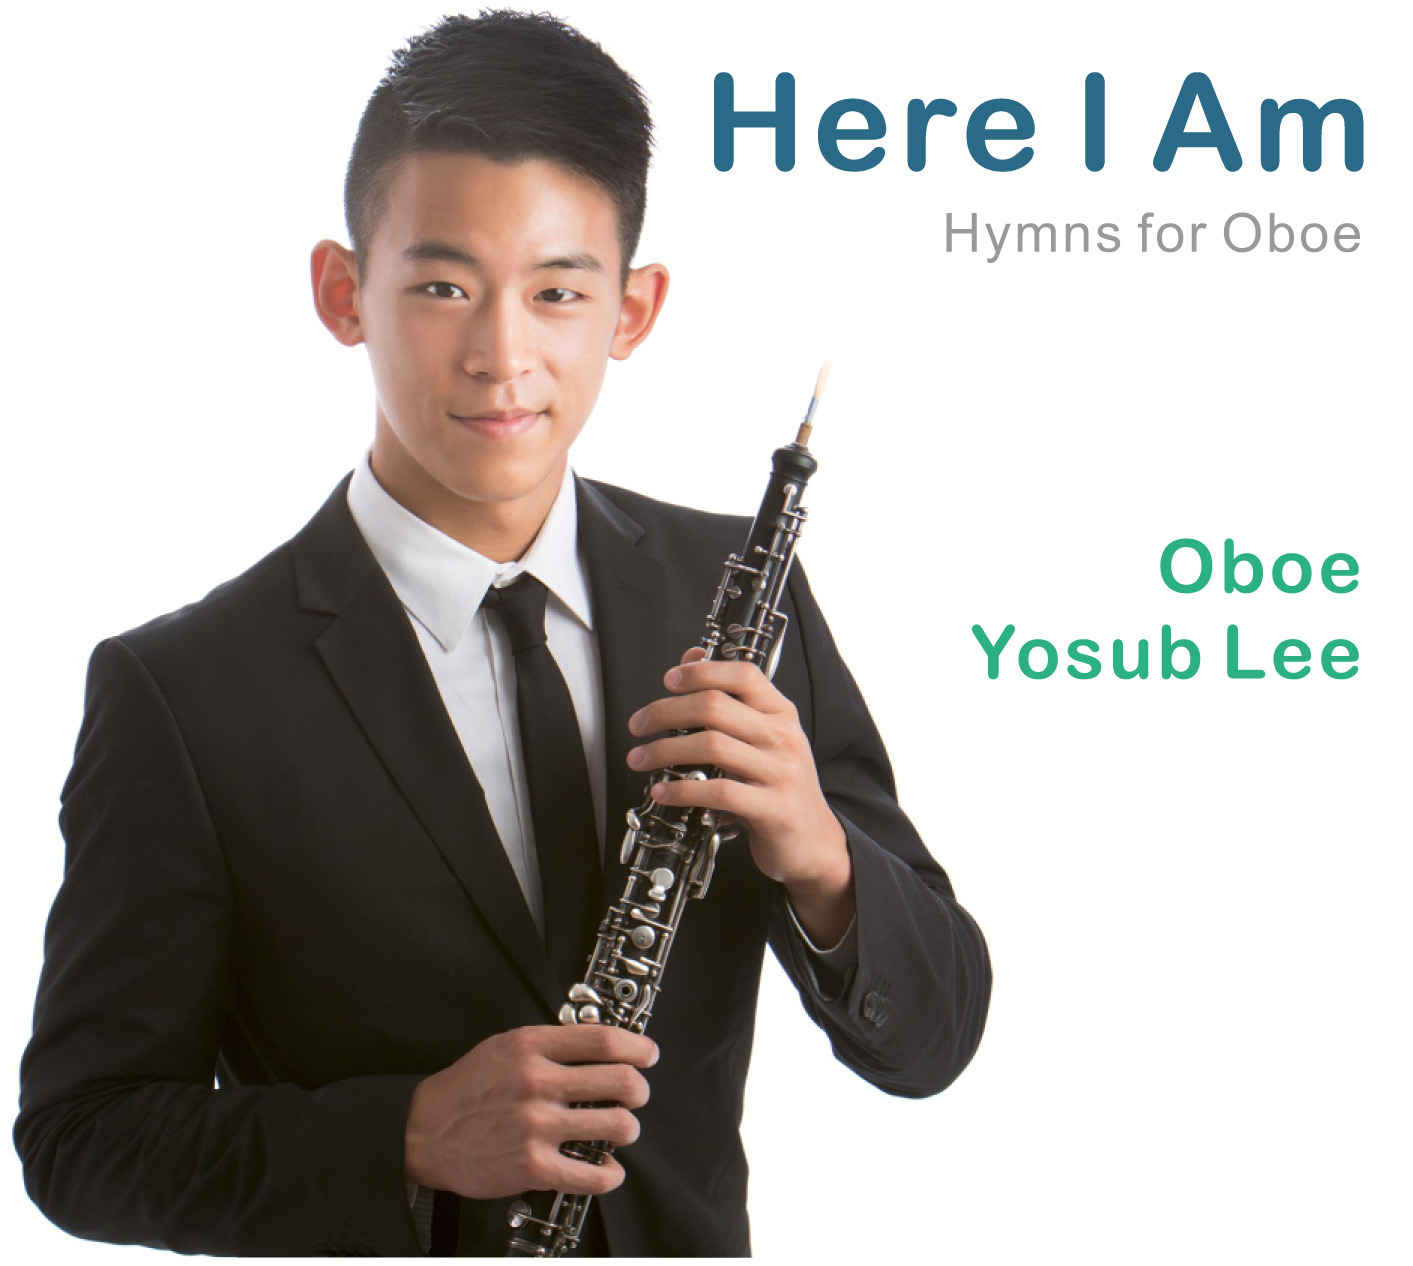 Yosub Lee “Here I Am”